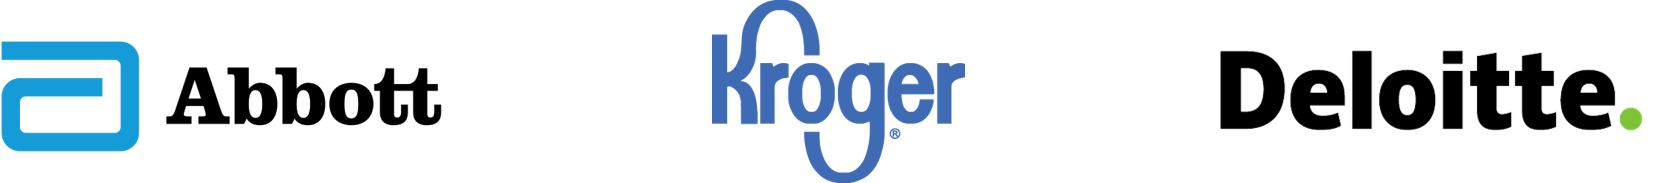 Company logos for Abbott, Kroger, and Deloitte